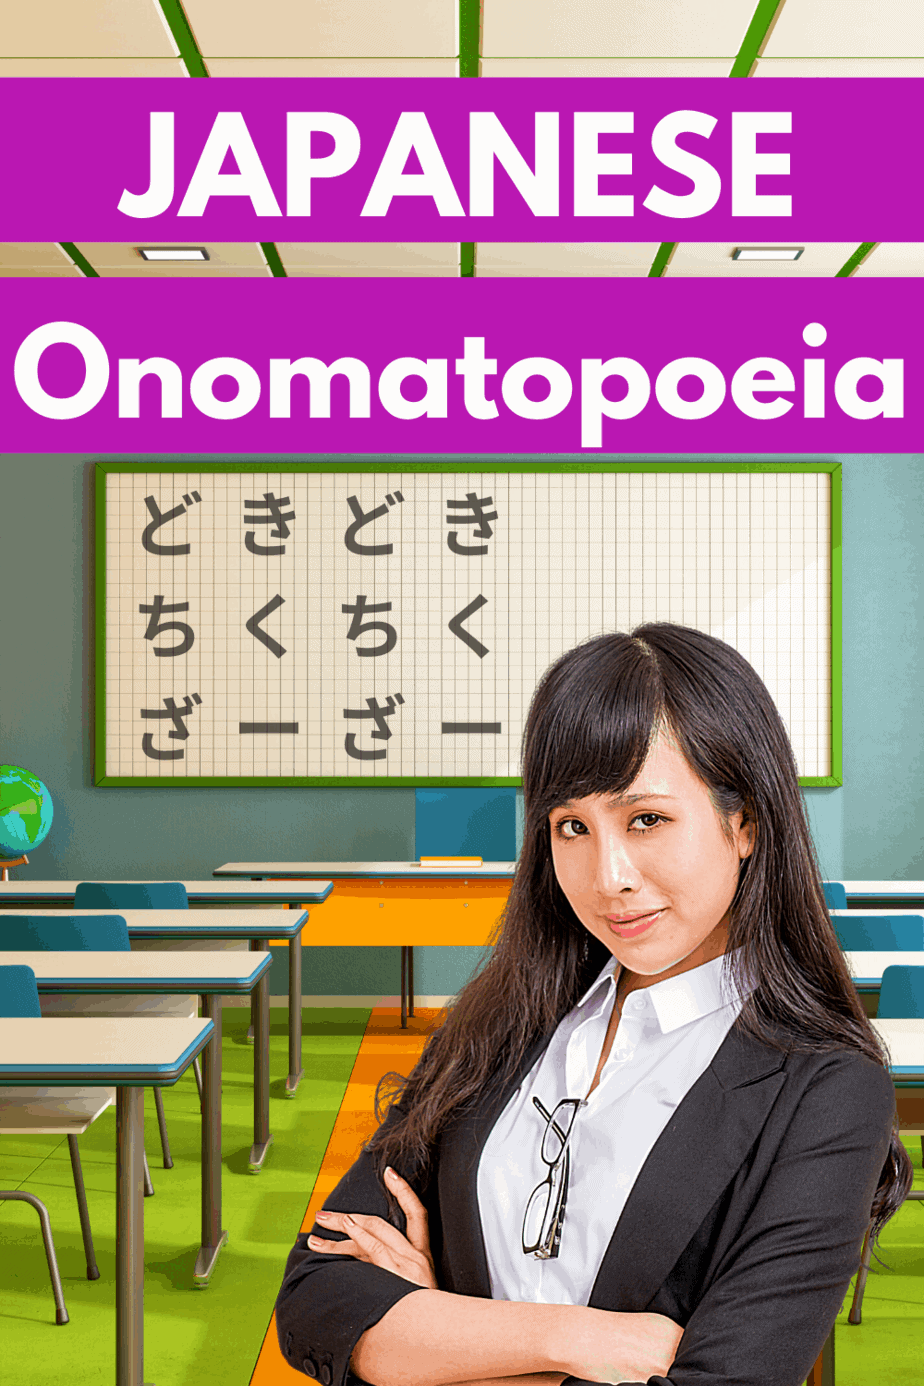 Japanese Onomatopoeia EXPLAINED